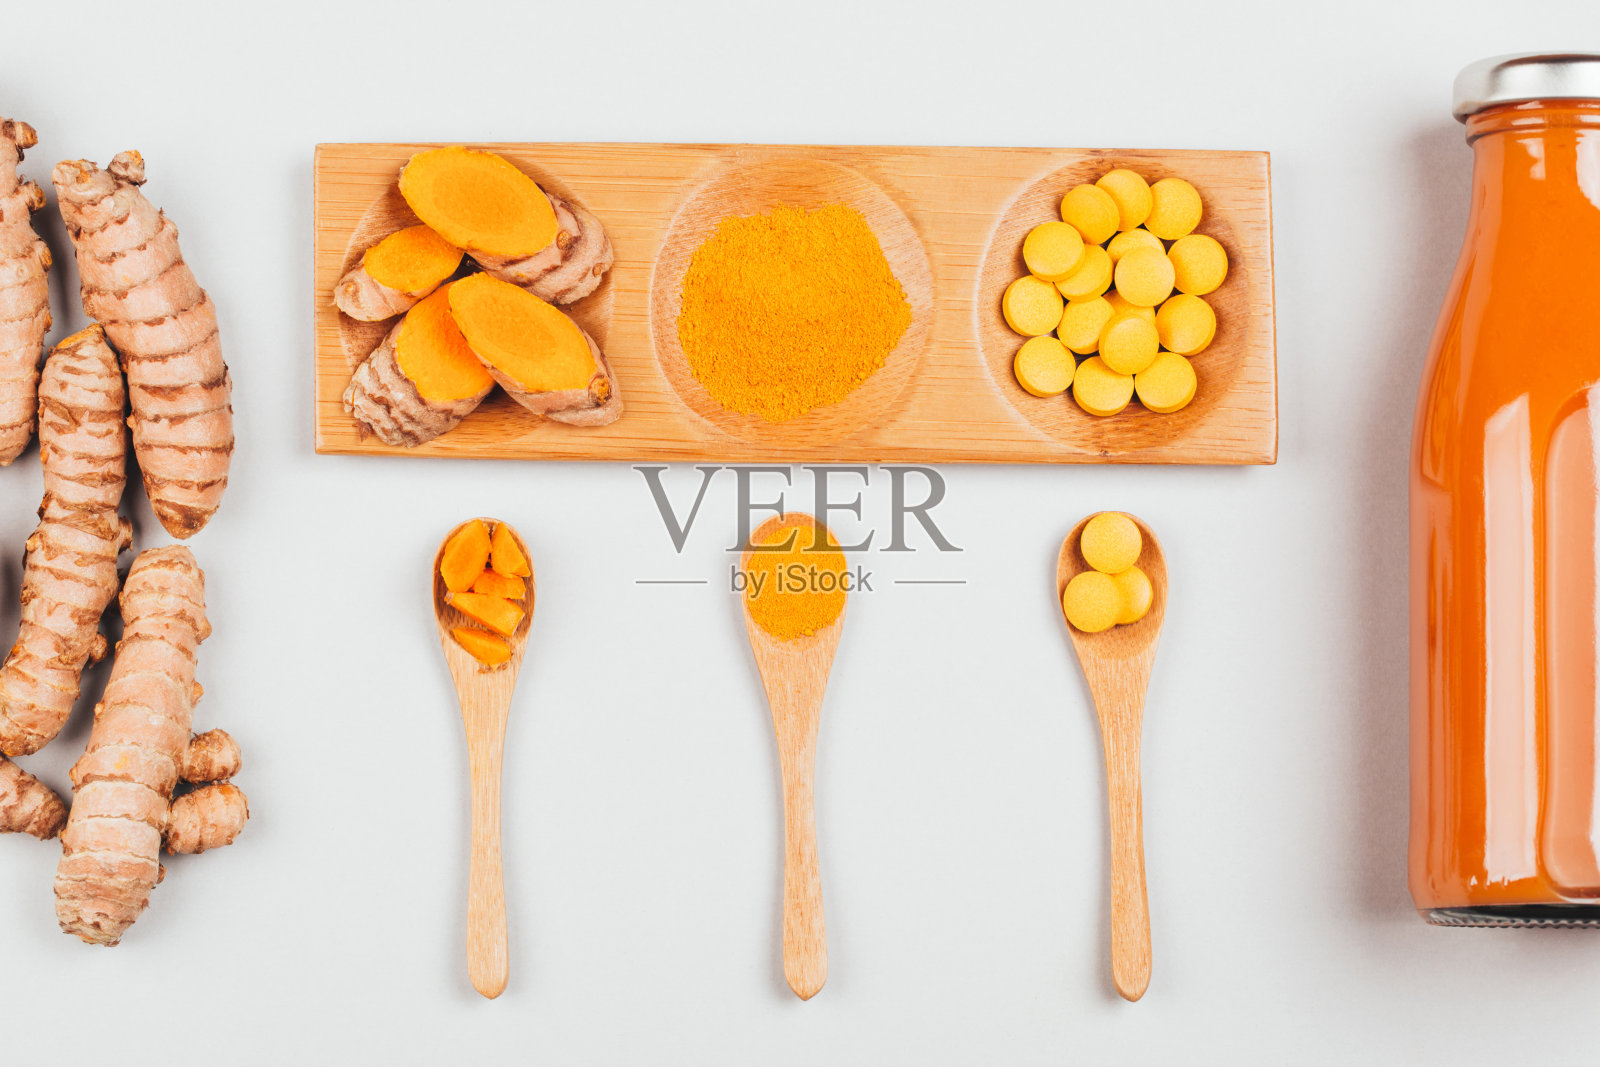 不同条件下的姜黄:鲜、干根、丸剂、粉剂和切块植物。照片摄影图片